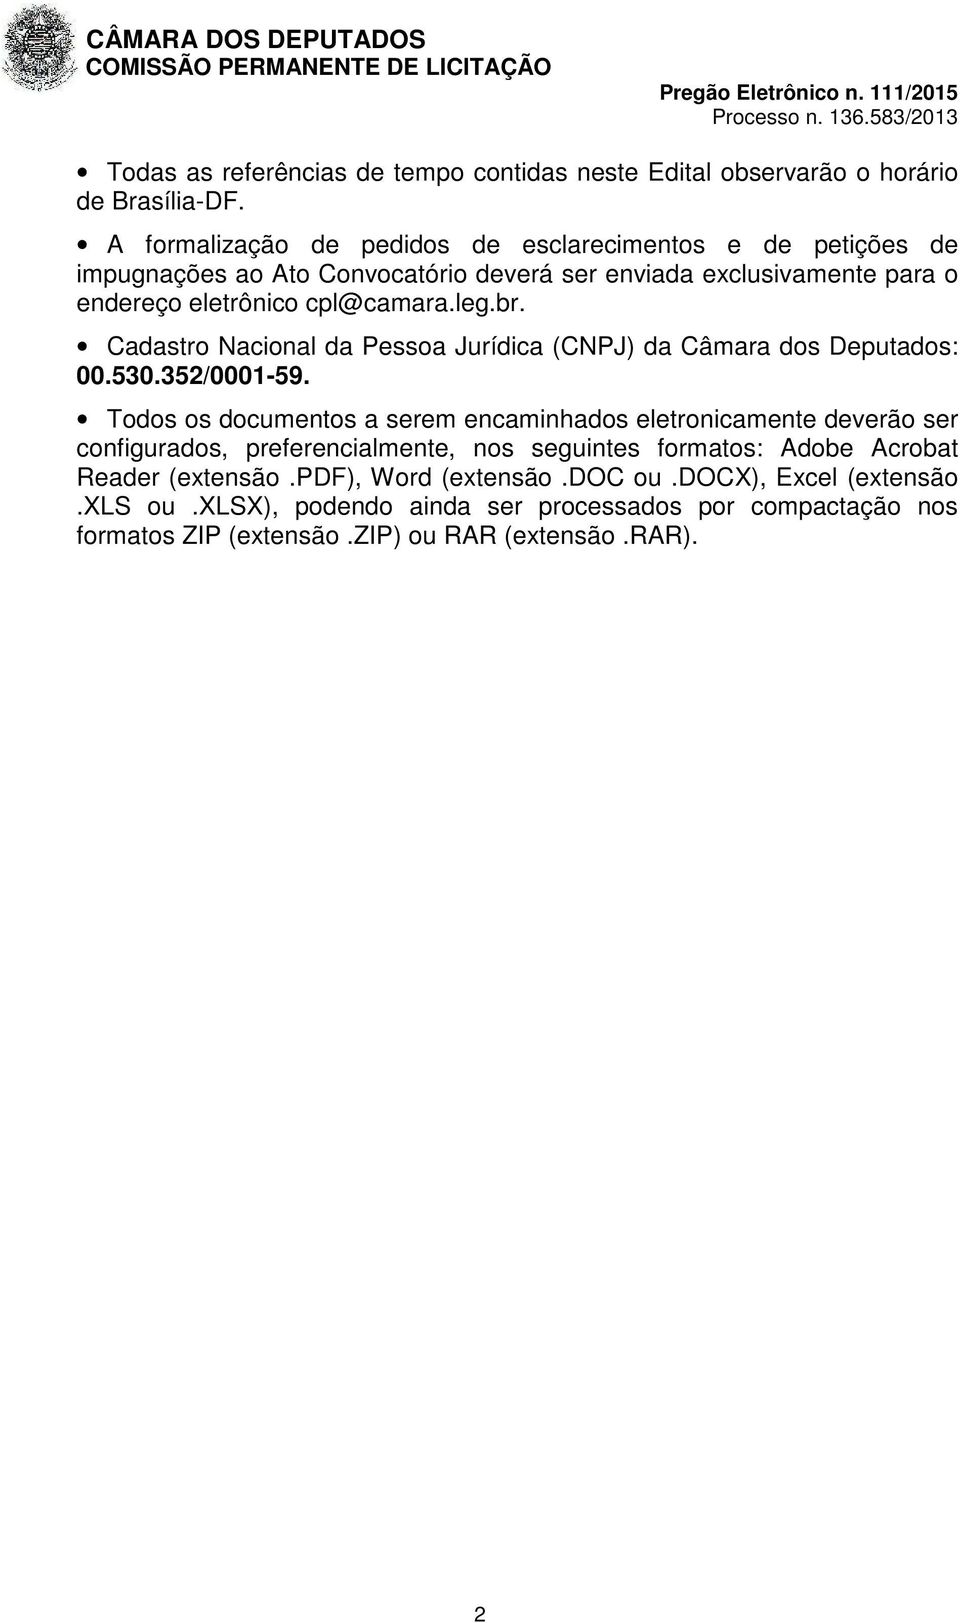 leg.br. Cadastro Nacional da Pessoa Jurídica (CNPJ) da Câmara dos Deputados: 00.530.352/0001-59.